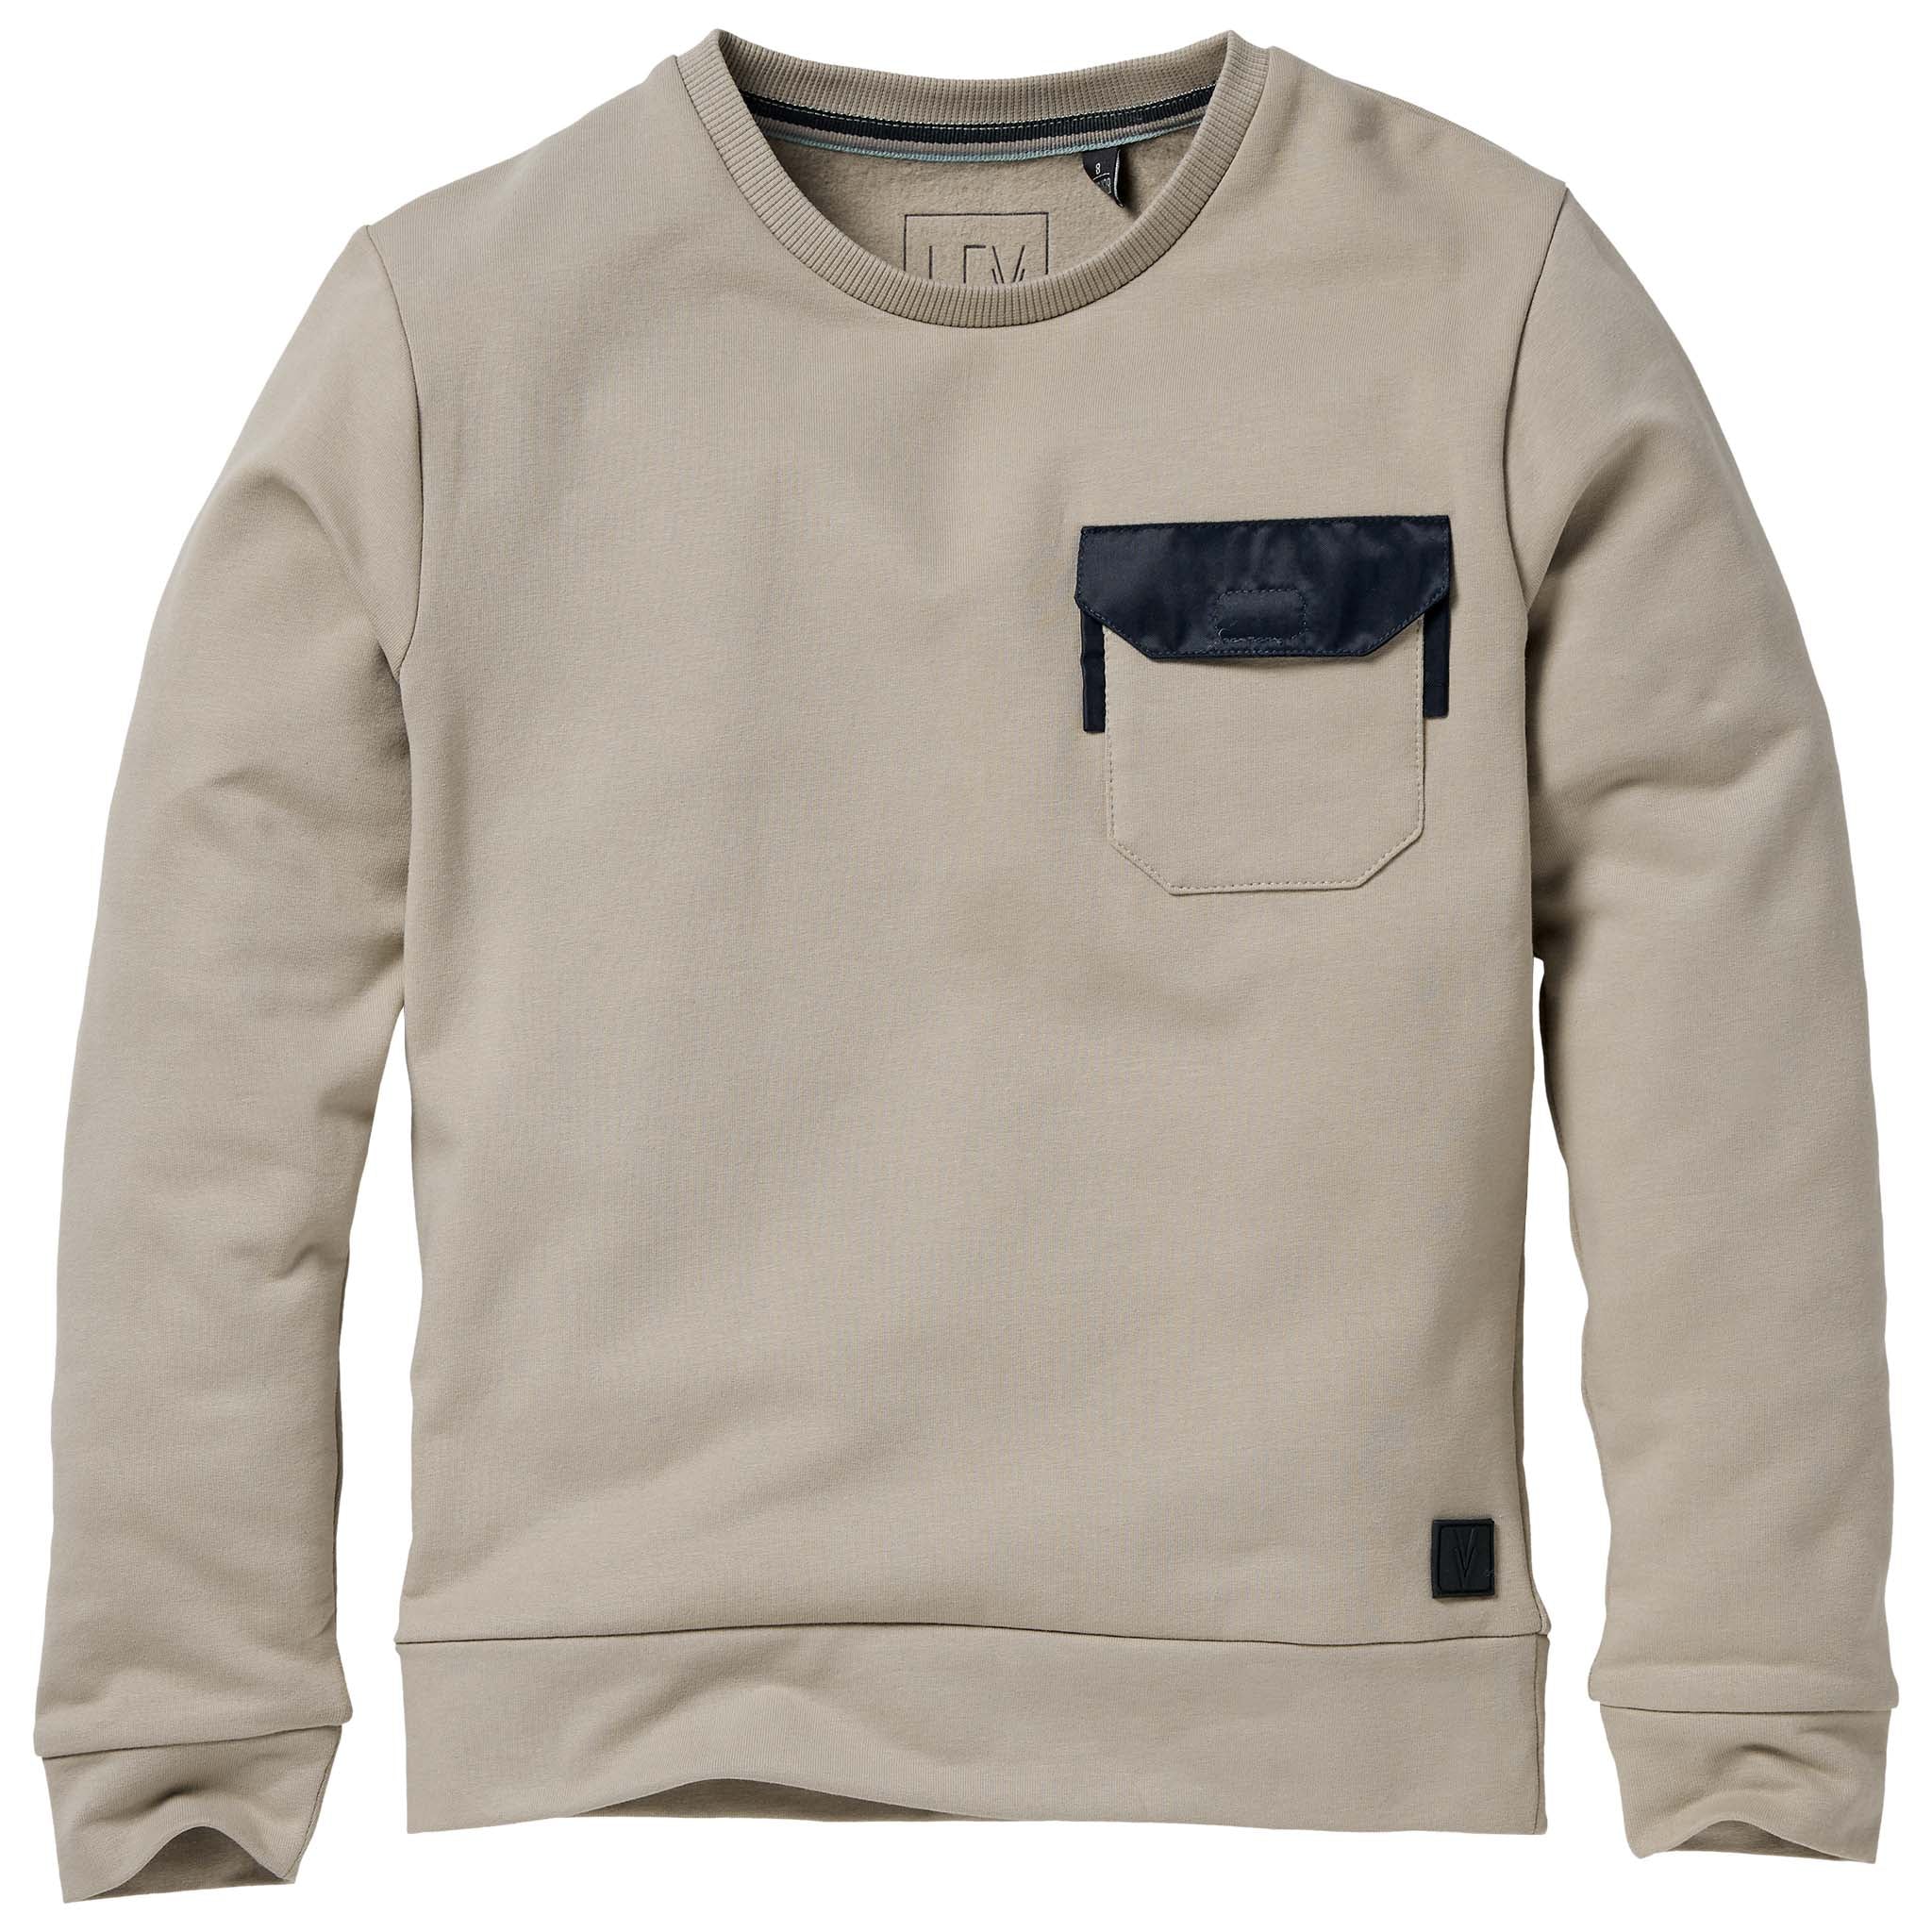 Jongens Sweater REMCO W211 van LEVV in de kleur Grey Light in maat 176.